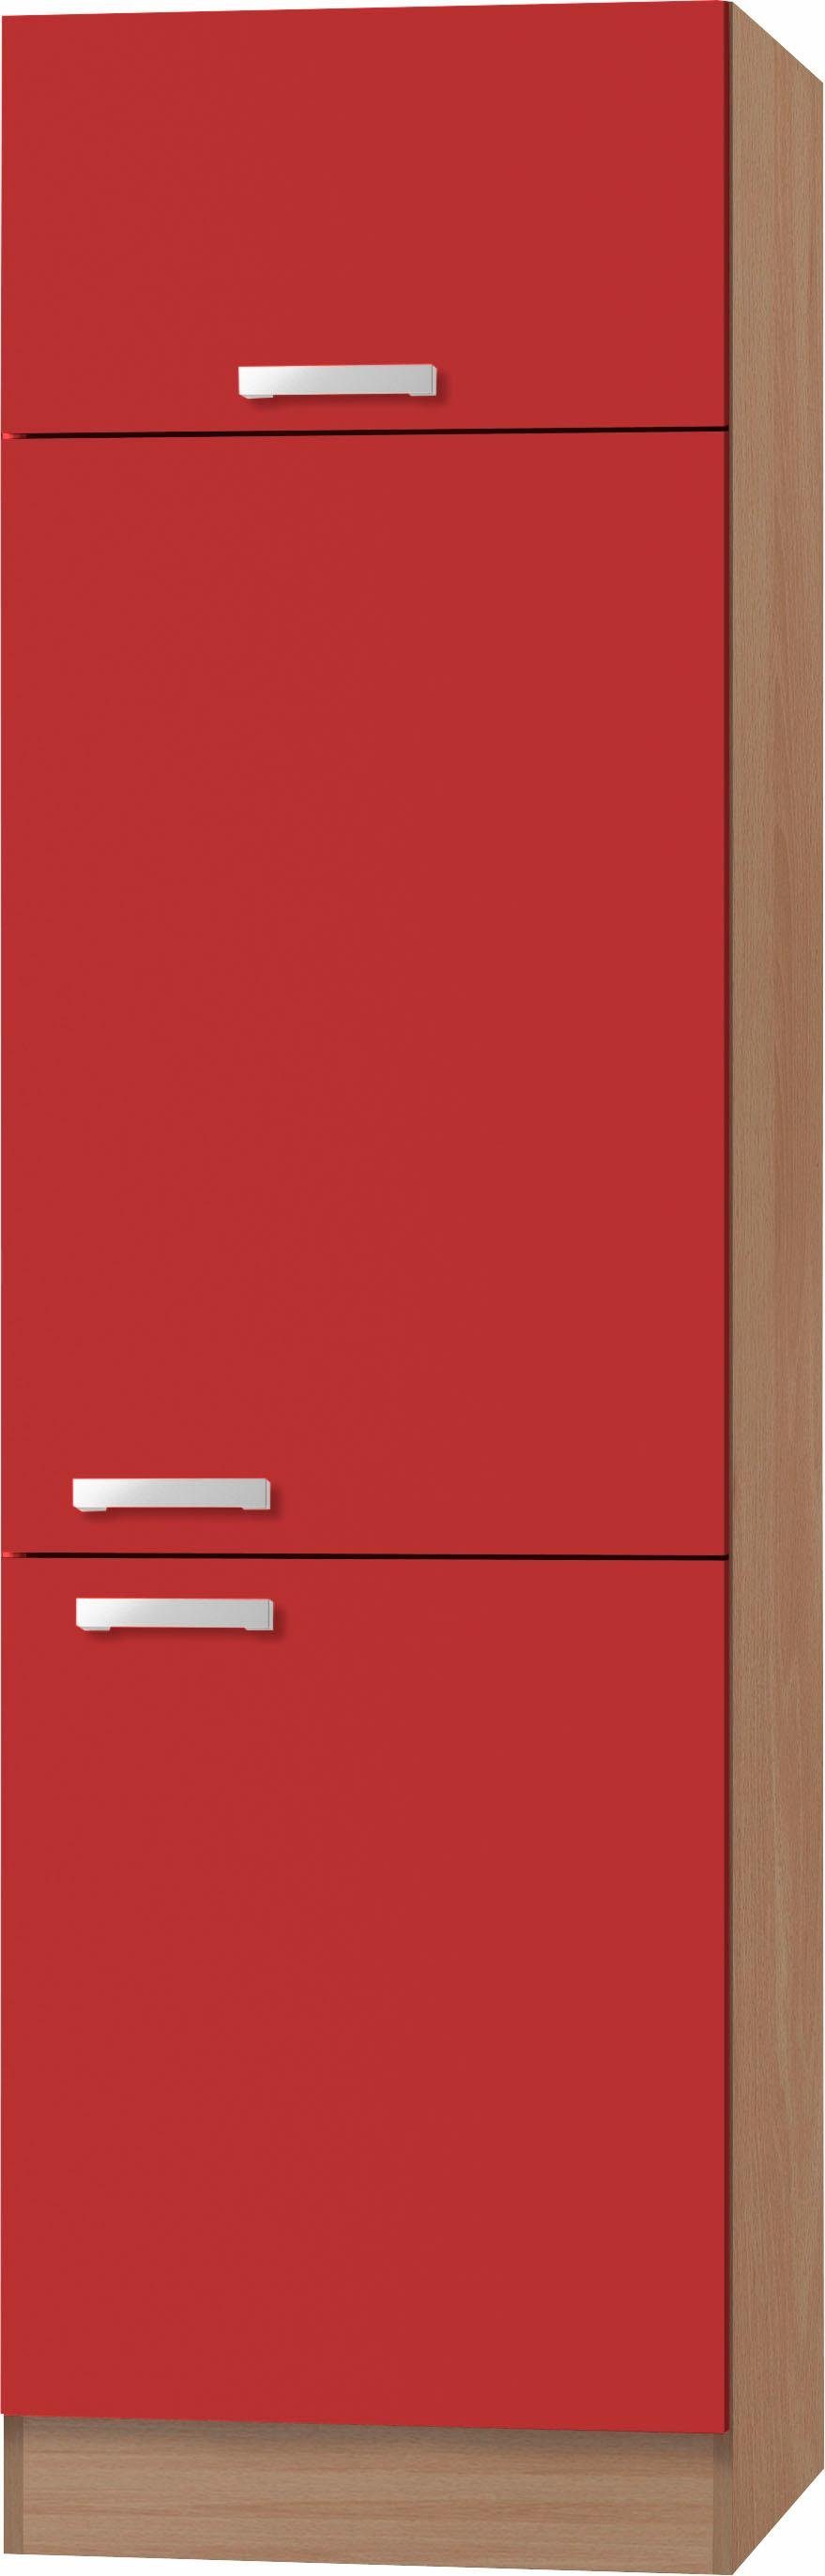 OPTIFIT Kühlumbauschrank Odense 60 cm breit, 207 cm hoch, geeignet für Einbaukühlschrank mit maß 88 cm rot/buche | buchefarben